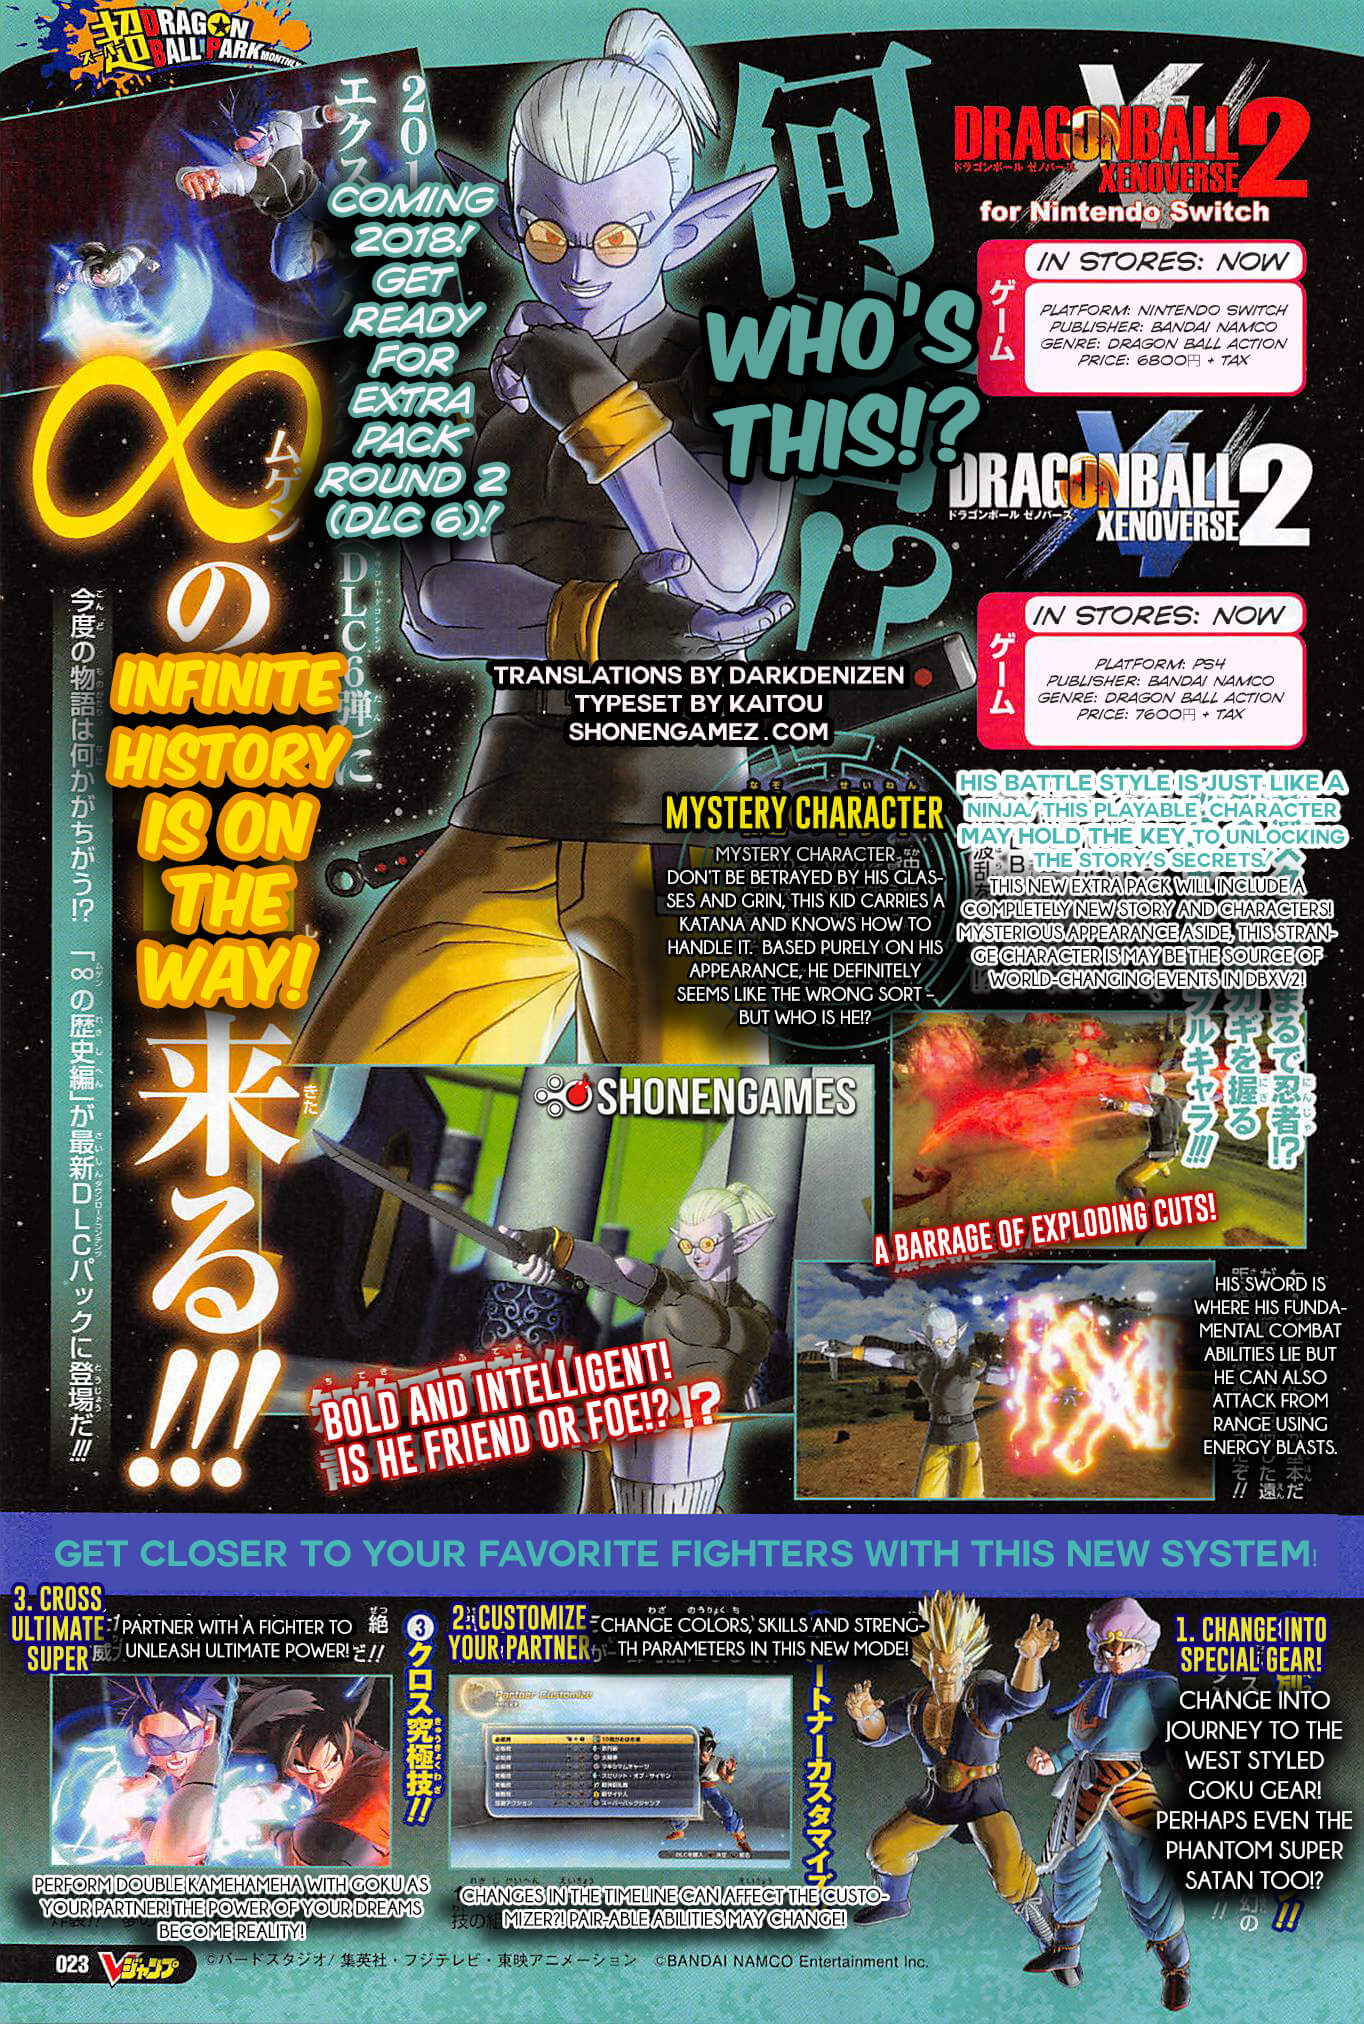 Dragon Ball Xenoverse 2: Collecting And Farming All 7 Dragon Balls